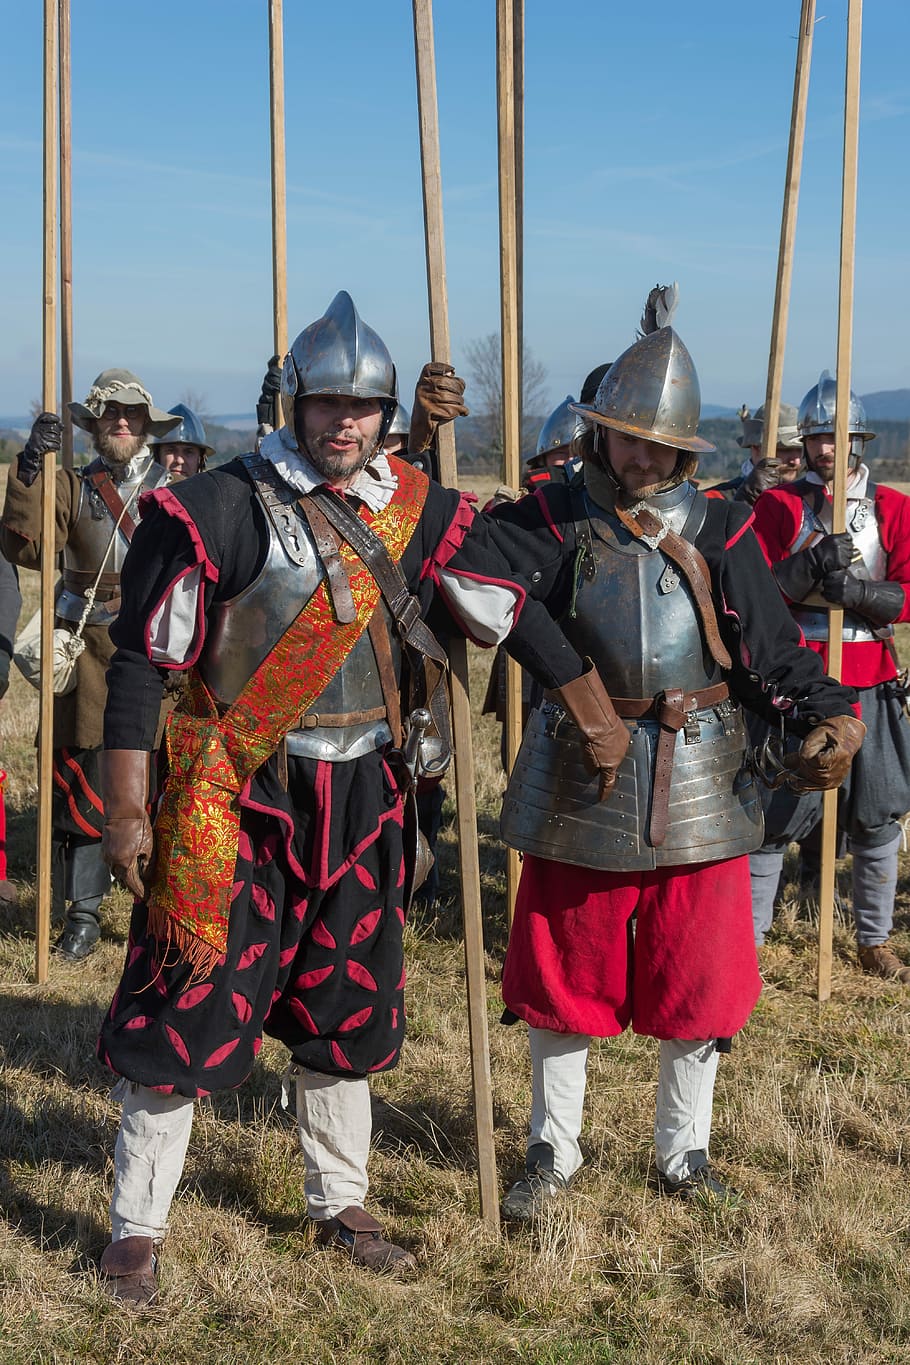 Pikanýr, Battle Of Jankau, battle re-enactment, historical costume, HD wallpaper